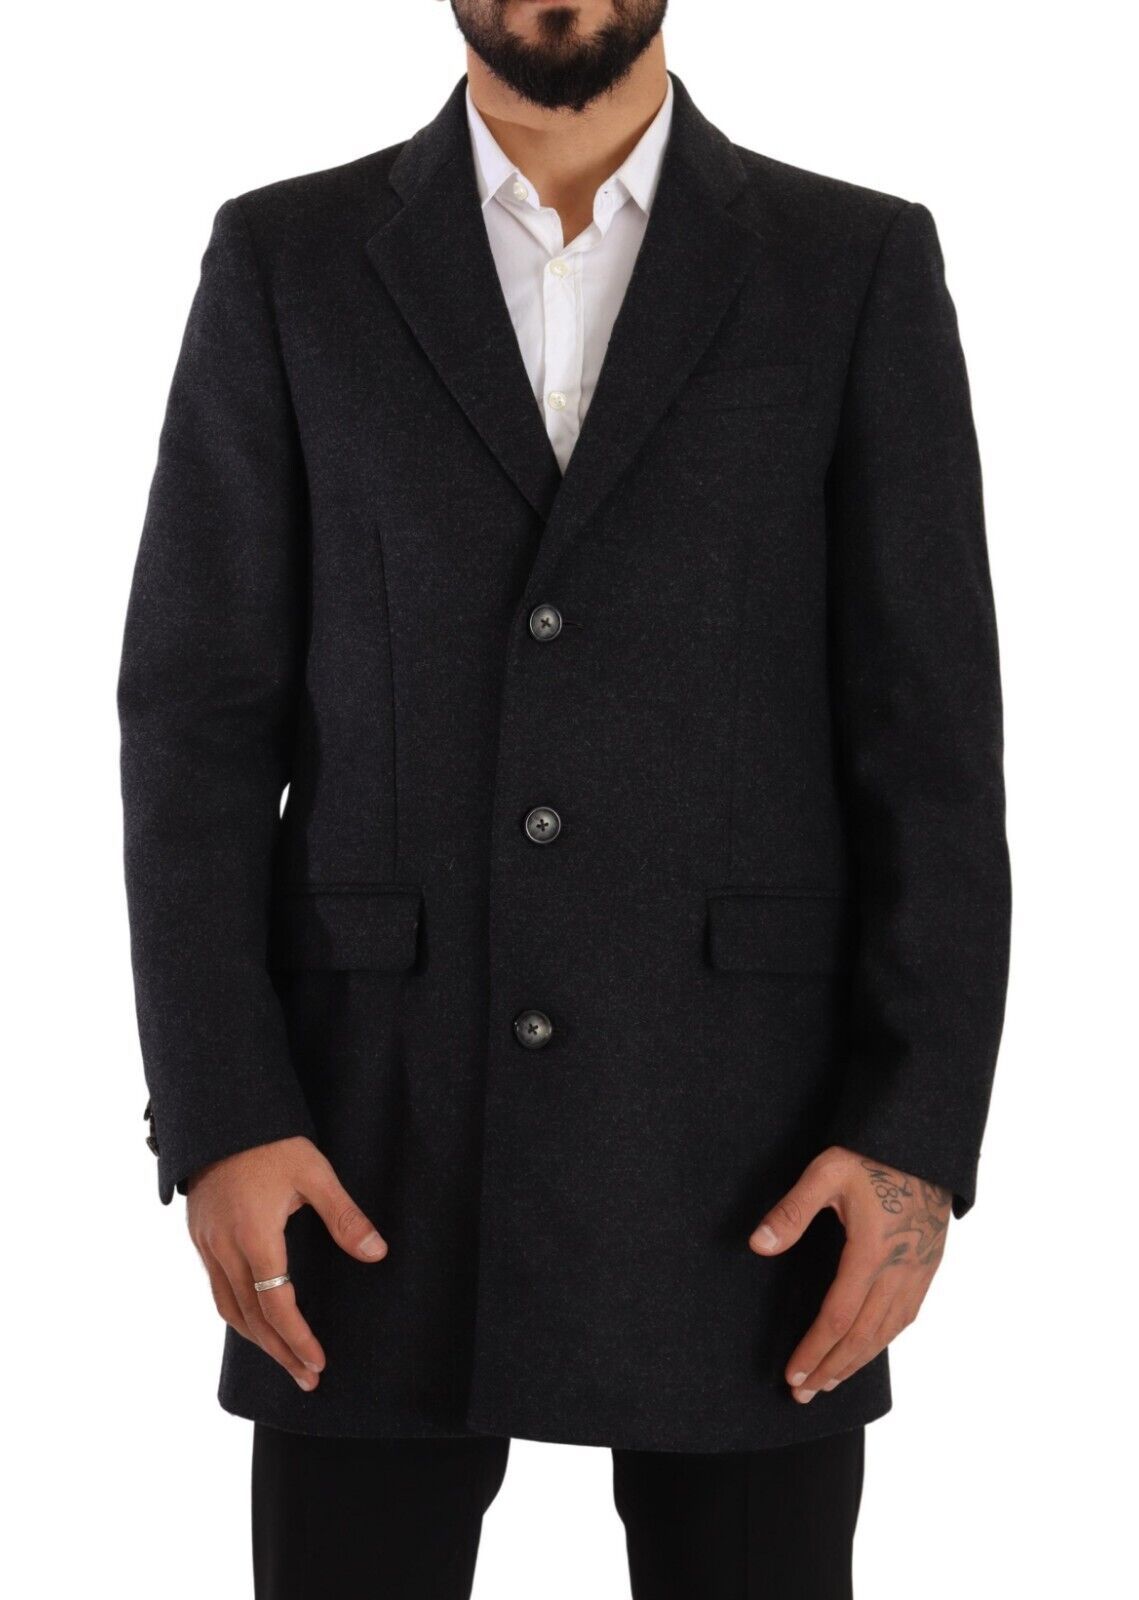 Lana grigio scuro di Dolce & Gabbana sopra la giacca da uomo del trench